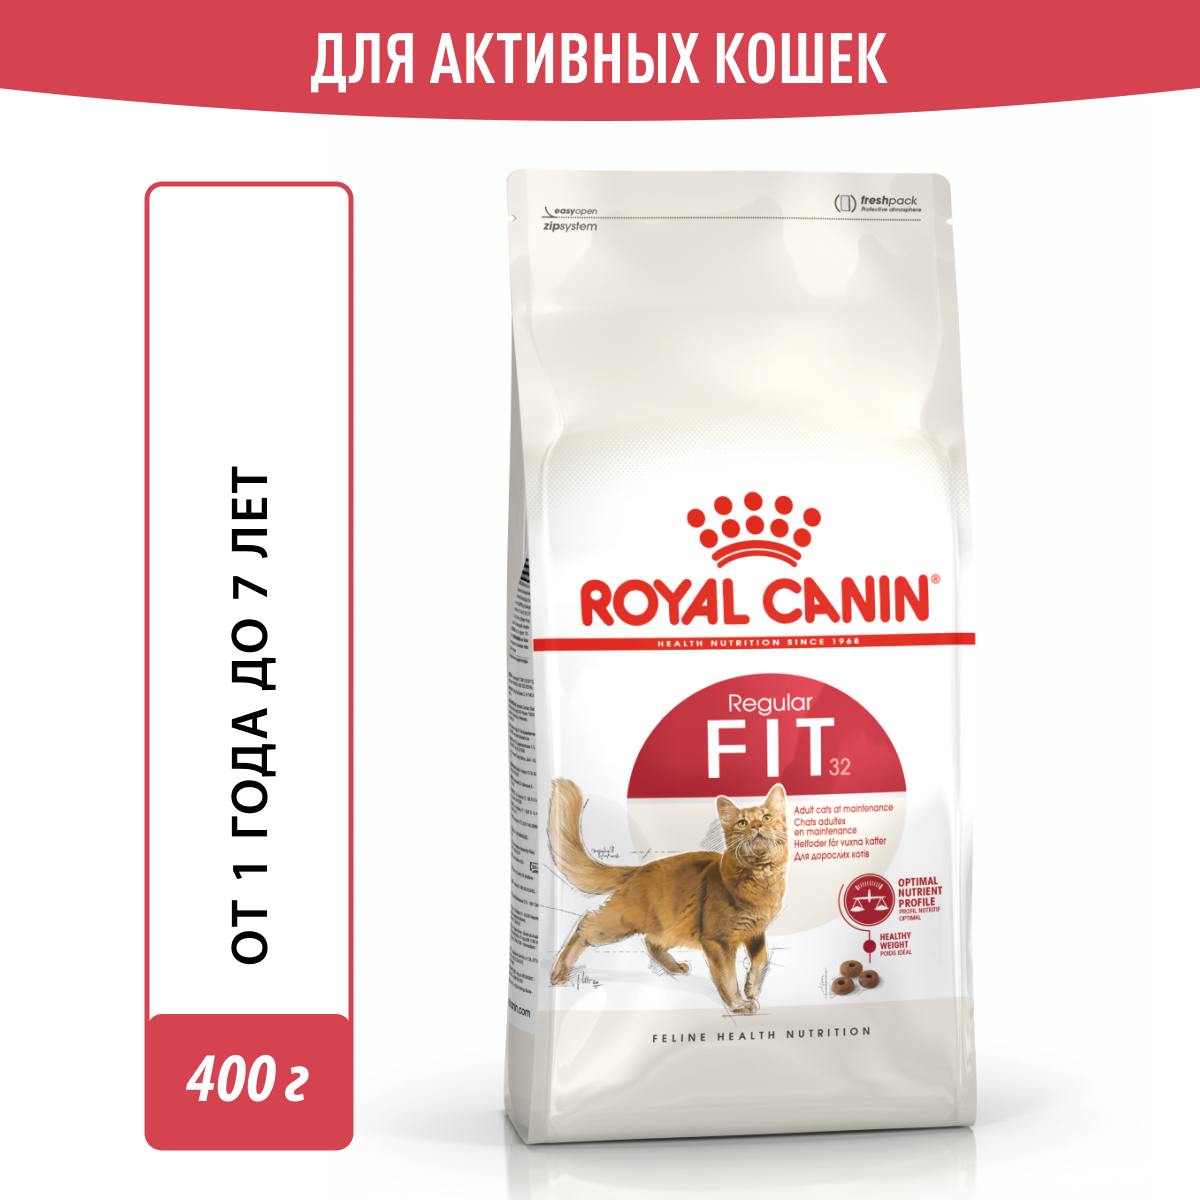 Royal Canin Fit 32 полнорационный сухой корм для взрослых кошек бывающих на улице - 400 г